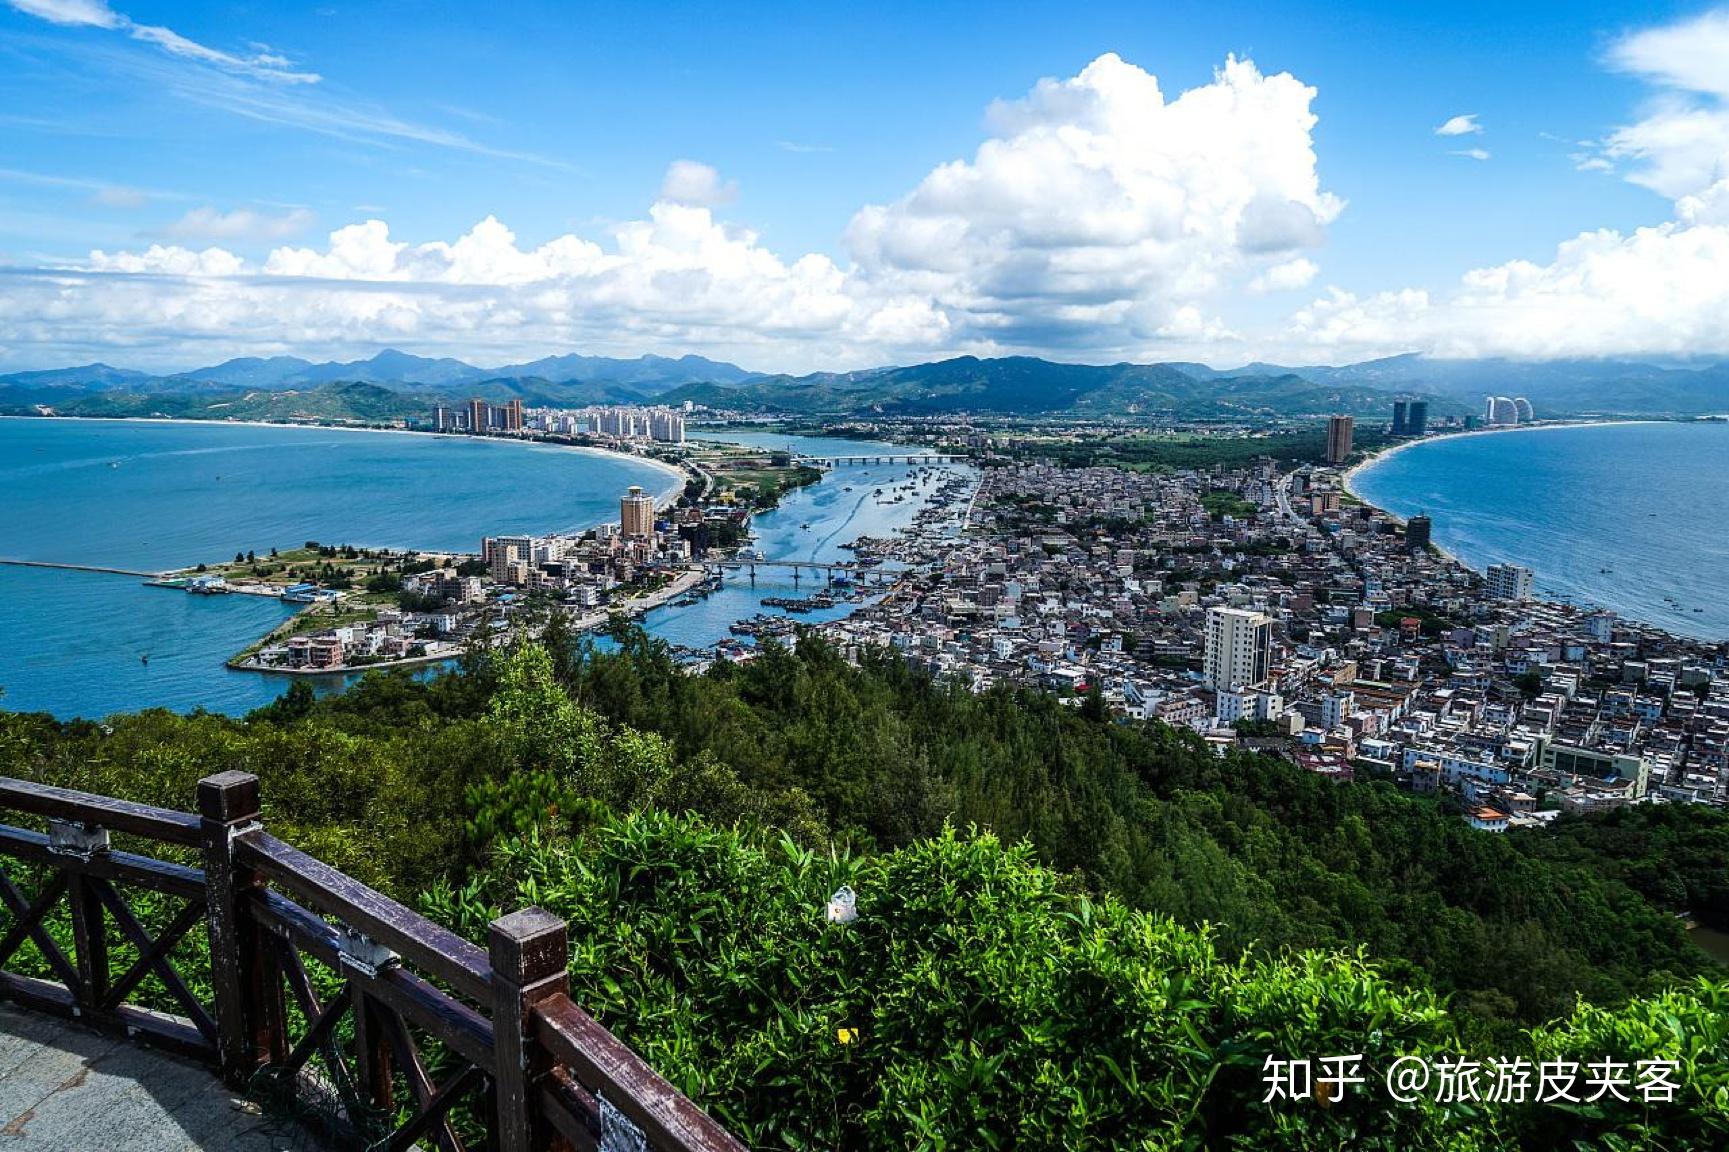 海龟岛自然保护区 - 惠州景点 - 华侨城旅游网